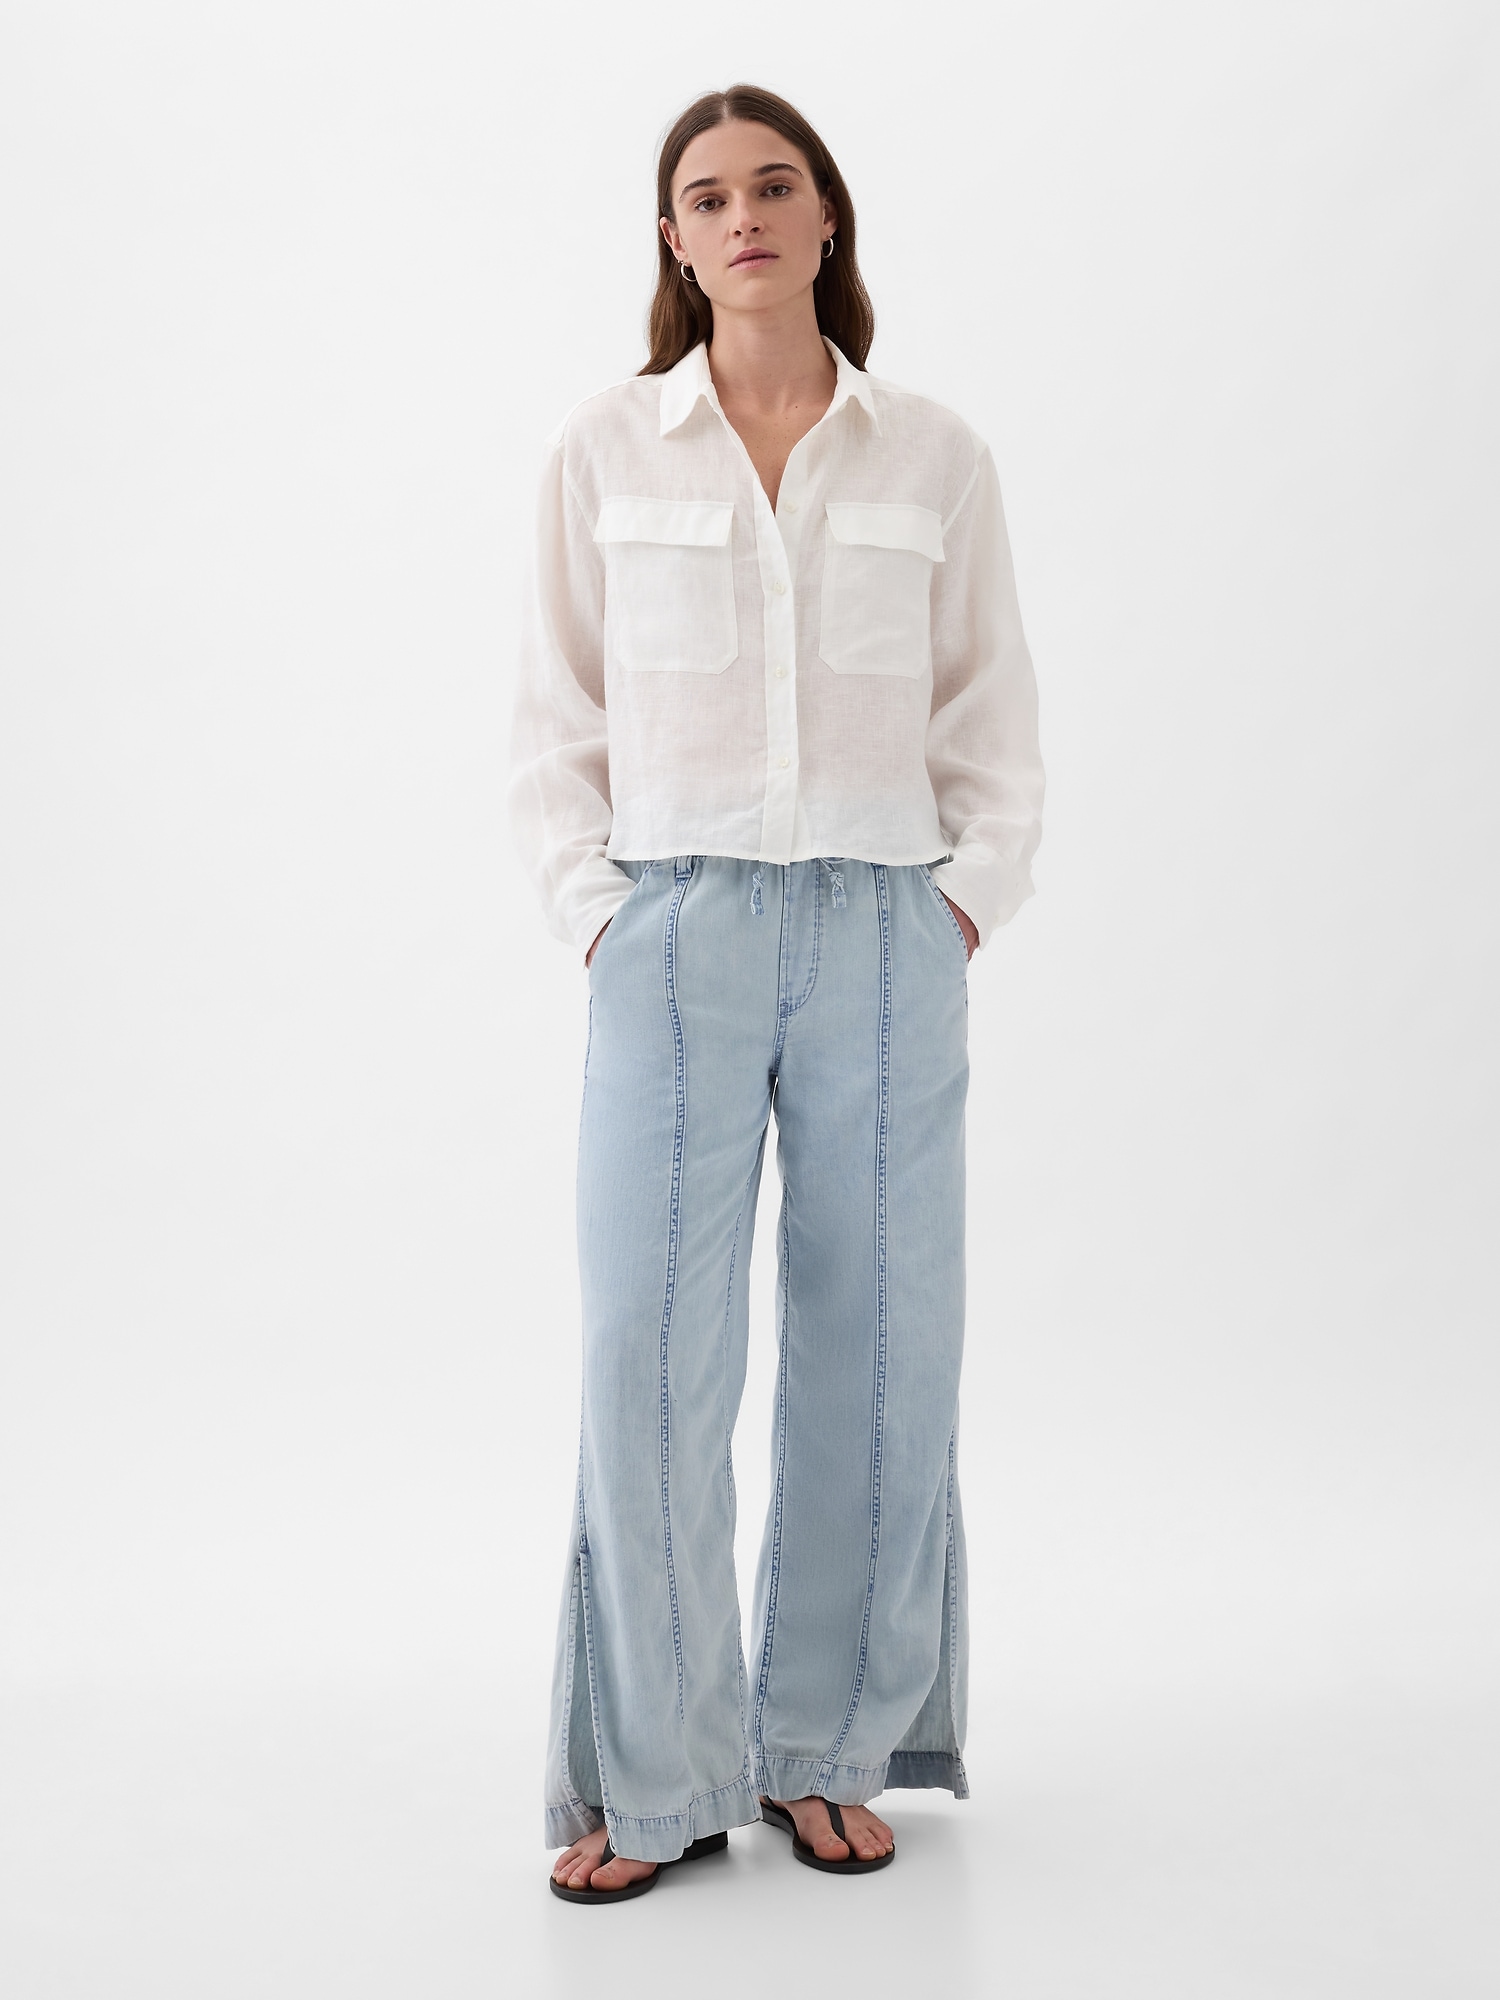 Smart looking GAP Dress Pants - Women's Size 12 Long